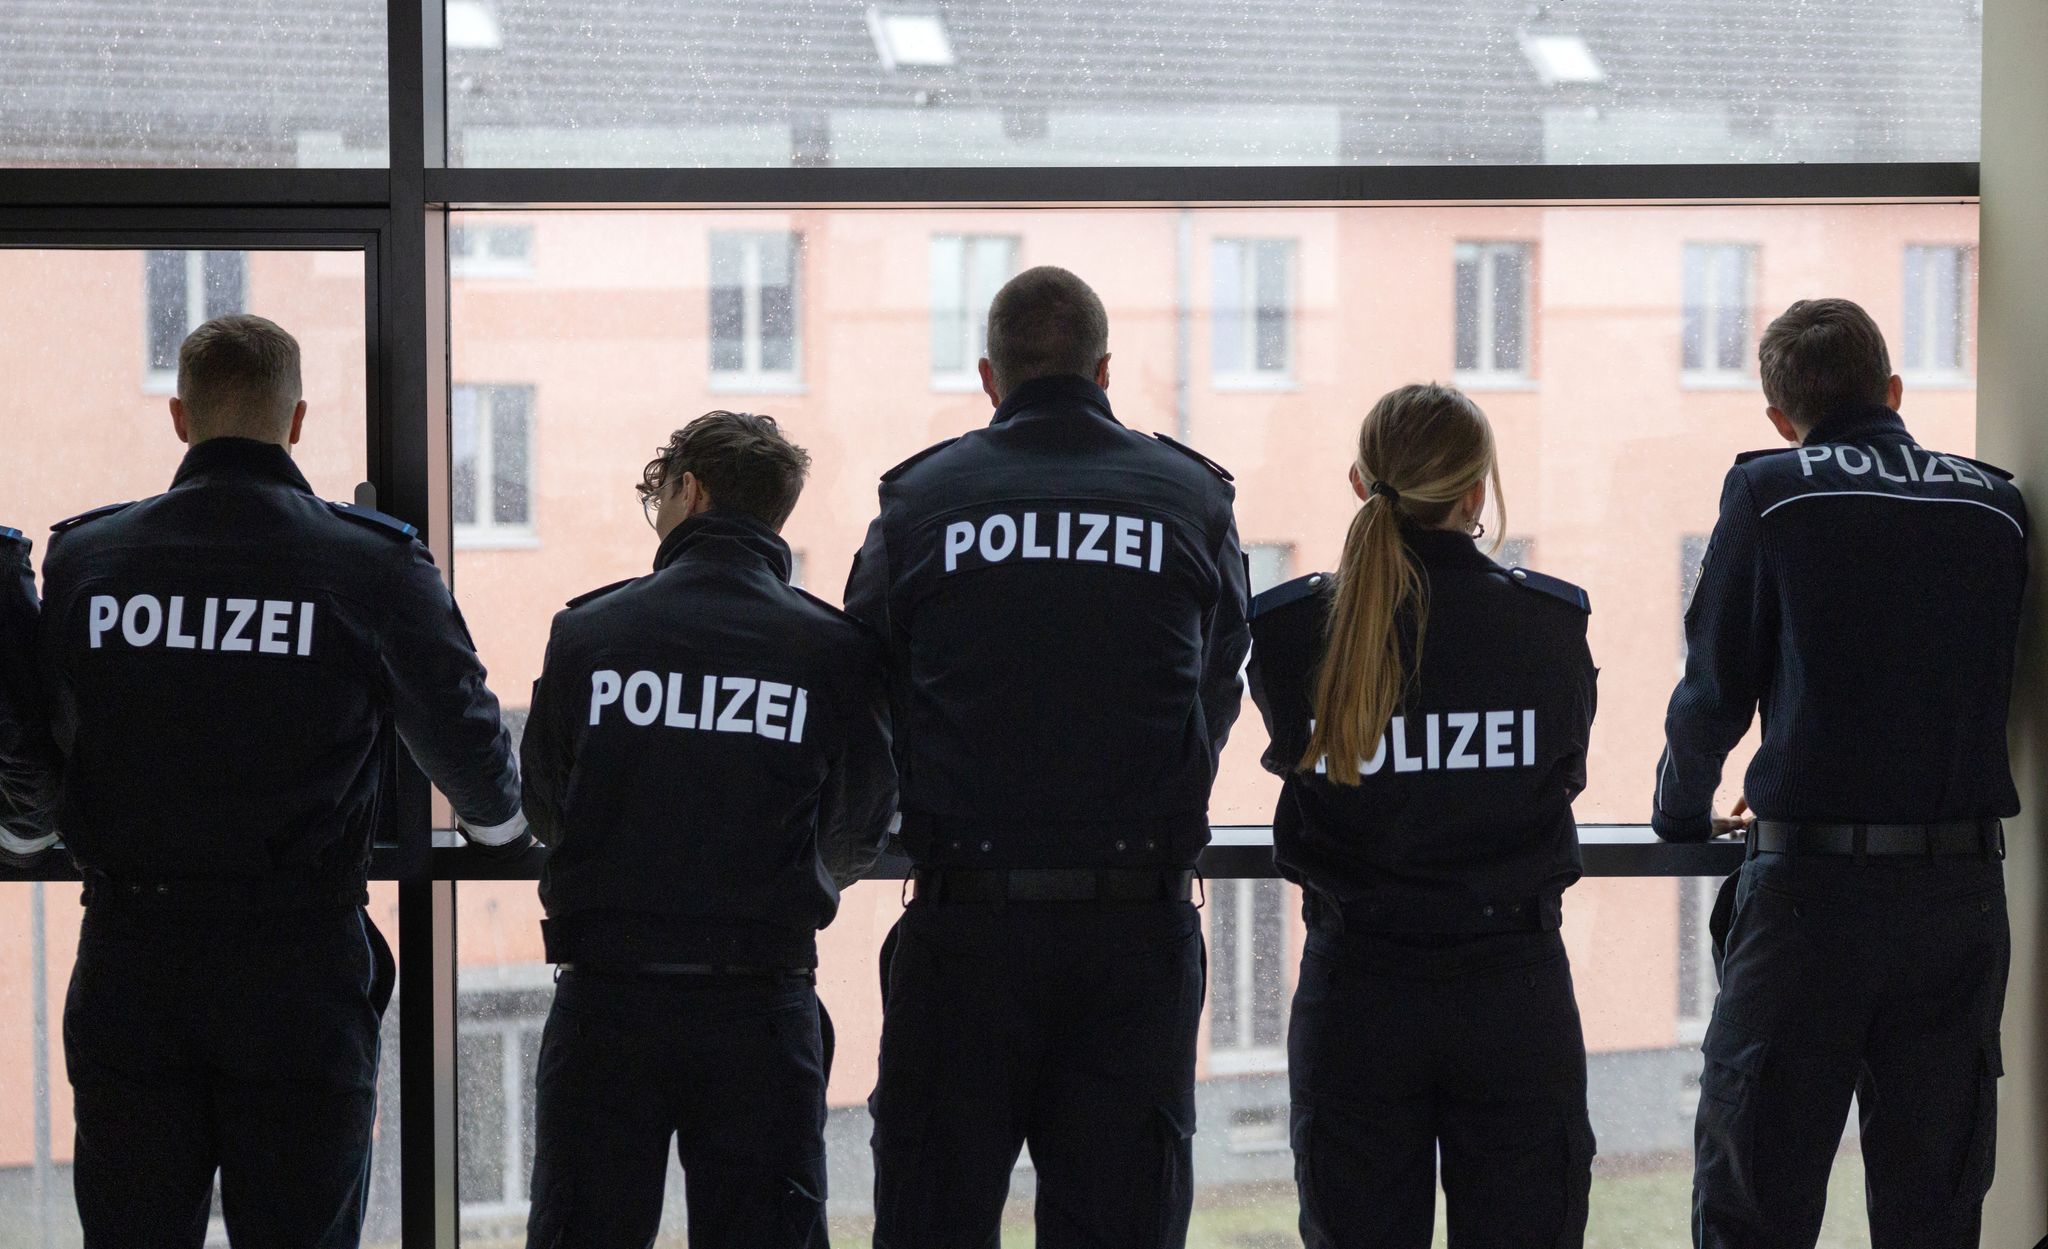 Bildungseinrichtung der Thringer Polizei 
Die Polizeischule in Meiningen geriet wegen schwerer Vorwrfe in die Schlagzeilen. Nun gibt es ein Ergebnis. Michael Reichel/dpa  DPA